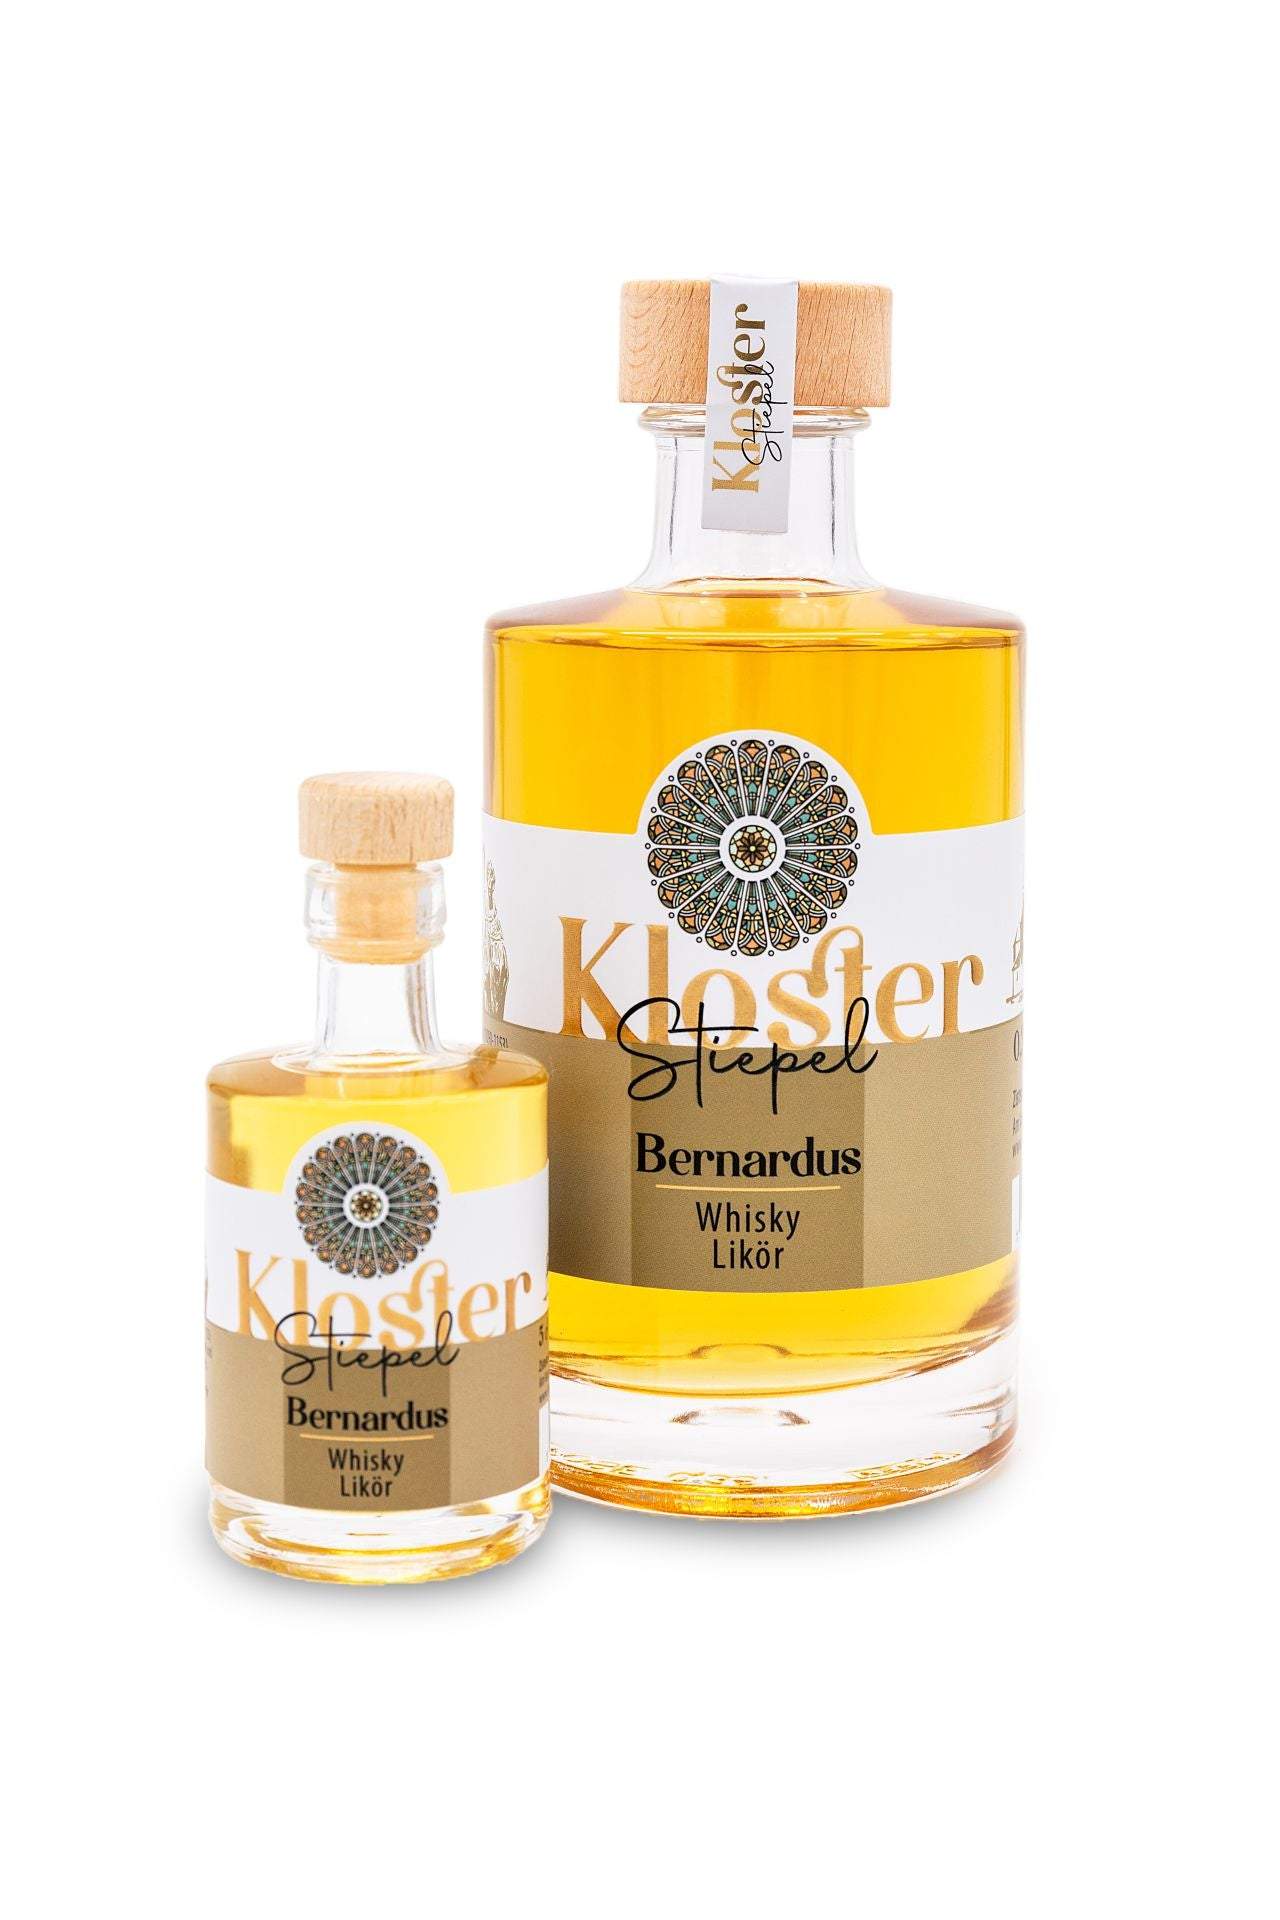 Bernardus - Whisky Likör-Klosterladenstiepel-Klosterliköre,Spirituosen